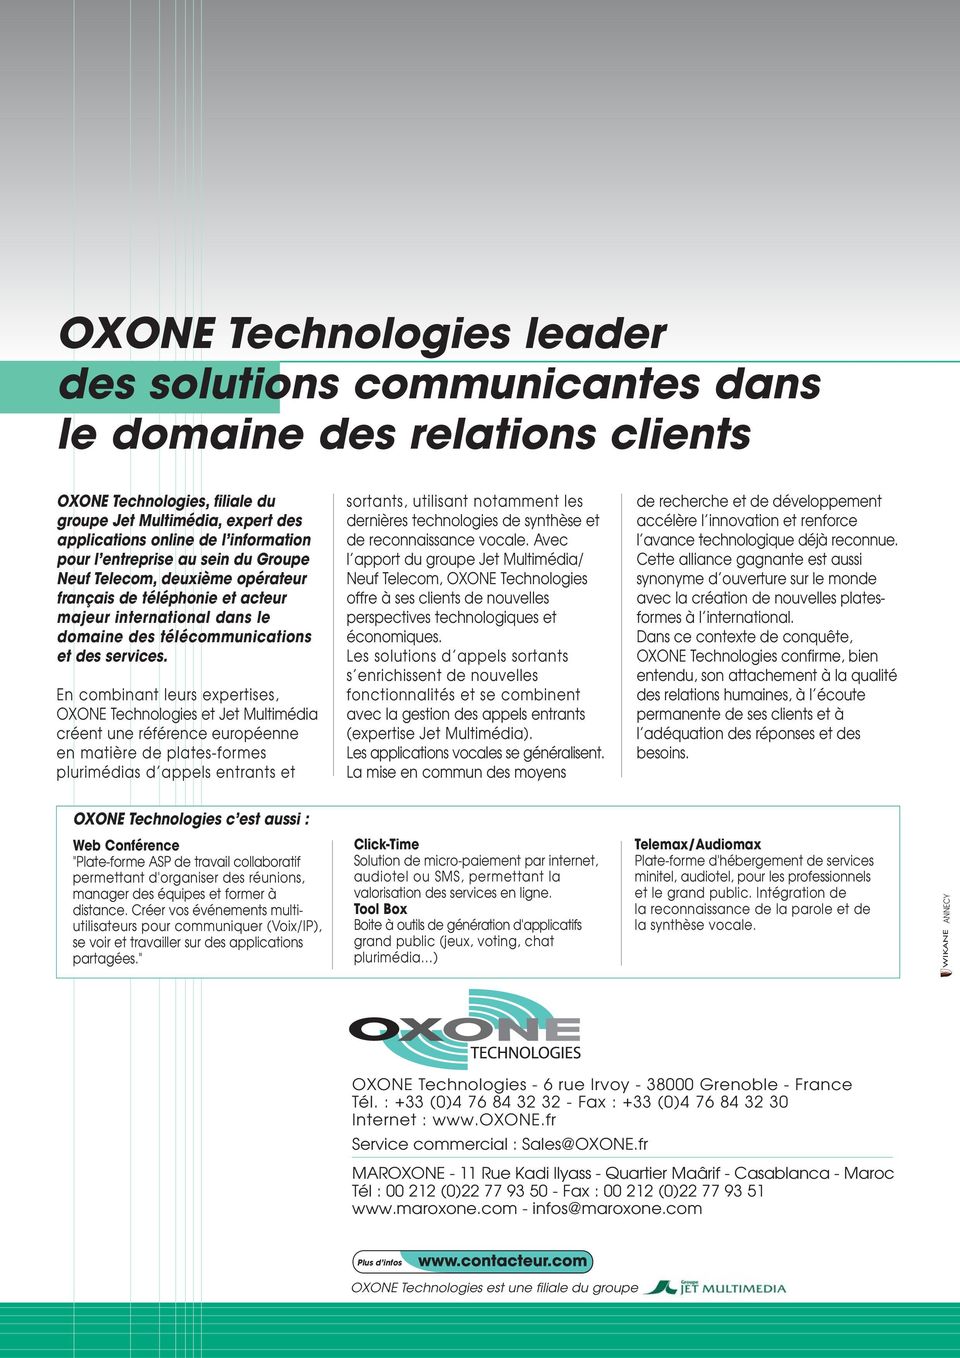 En combinant leurs expertises, OXONE Technologies et Jet Multimédia créent une référence européenne en matière de plates-formes plurimédias d appels entrants et sortants, utilisant notamment les